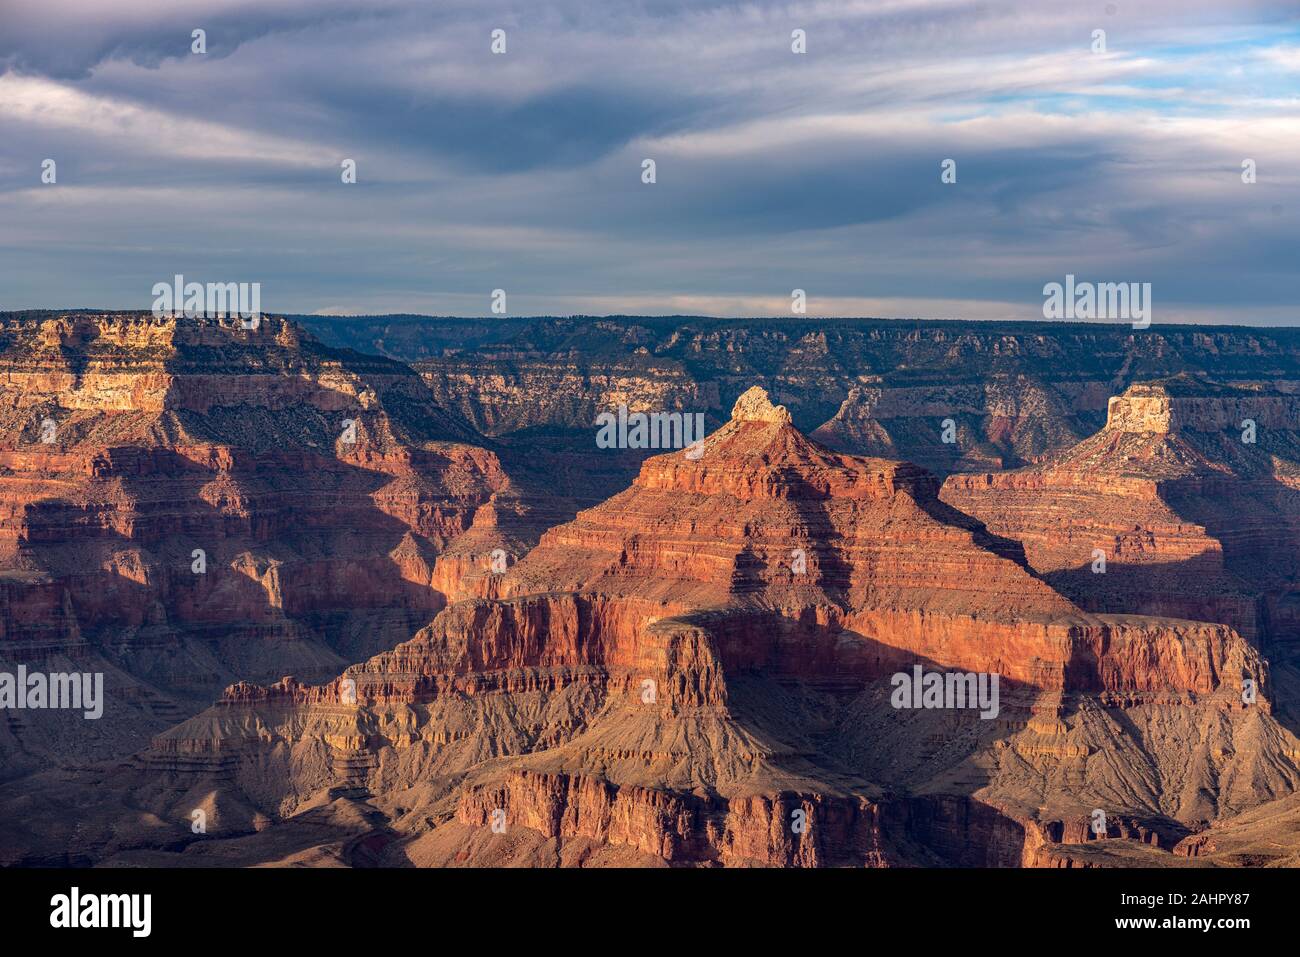 Una vista del robusto ma bellissimo parco nazionale del Grand Canyon durante un tramonto spettacolare evidenzia gli intricati dettagli delle creste e formazioni a Foto Stock